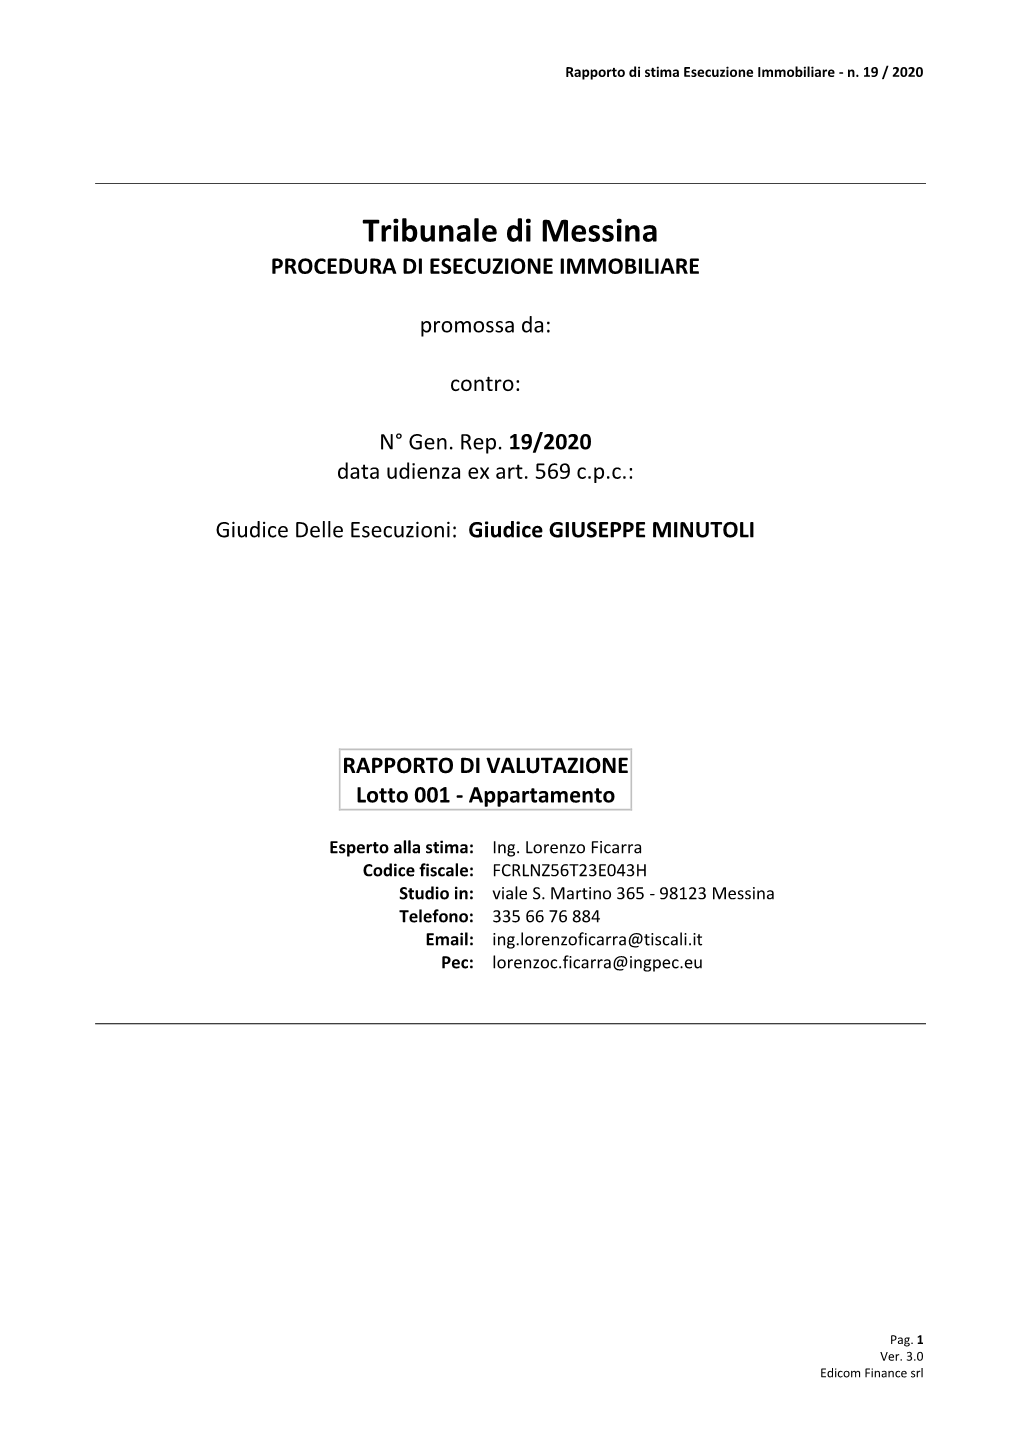 Tribunale Di Messina PROCEDURA DI ESECUZIONE IMMOBILIARE